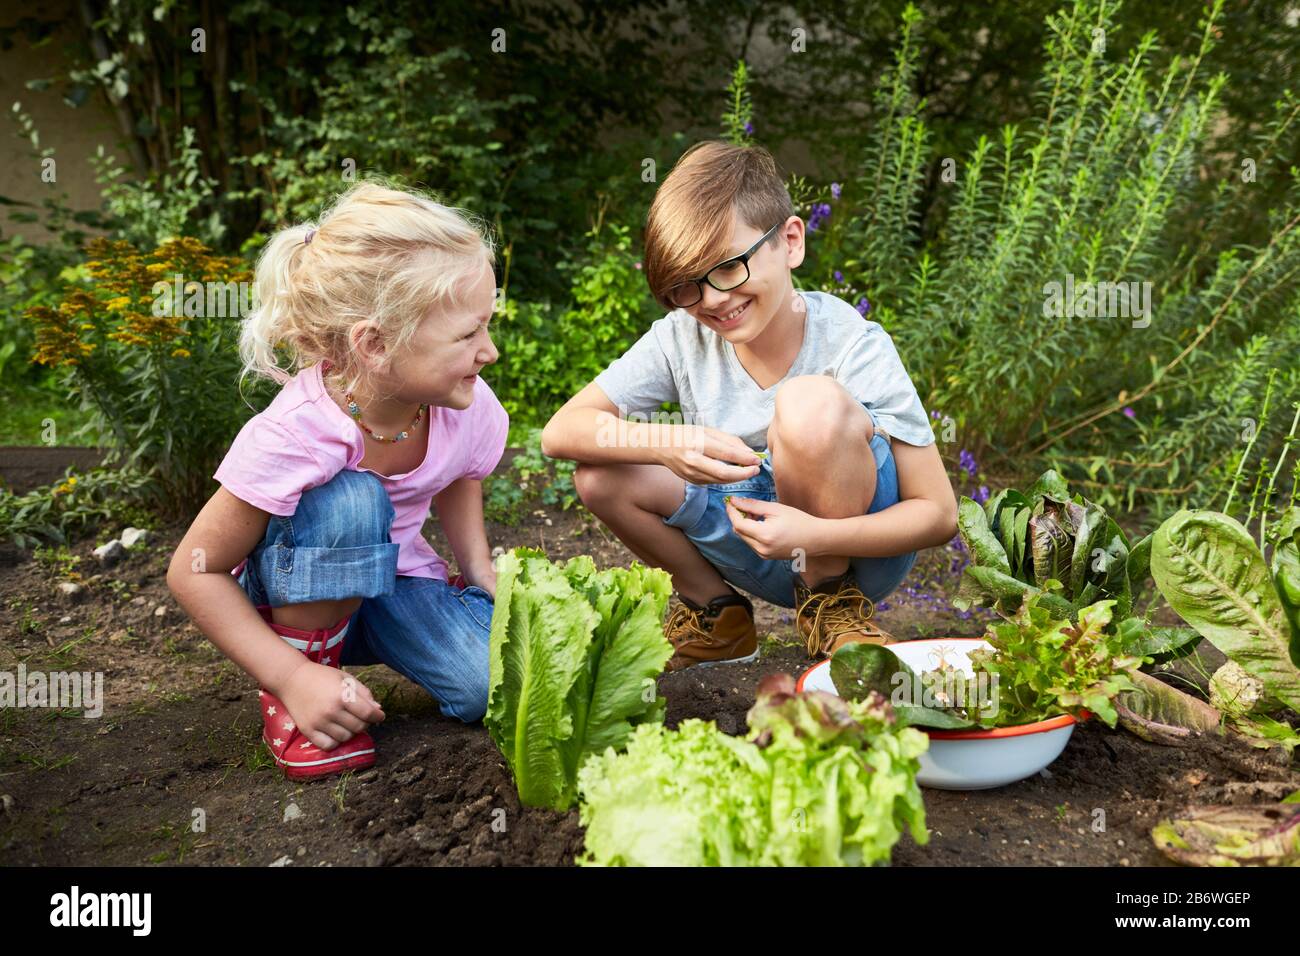 Kinder, die Lebensmittel untersuchen. Serie: Salatsuppe kochen, Salat ernten. Lernen nach dem Reggio-Pädagogik-Prinzip, spielerisches Verständnis und Entdeckung. Deutschland Stockfoto